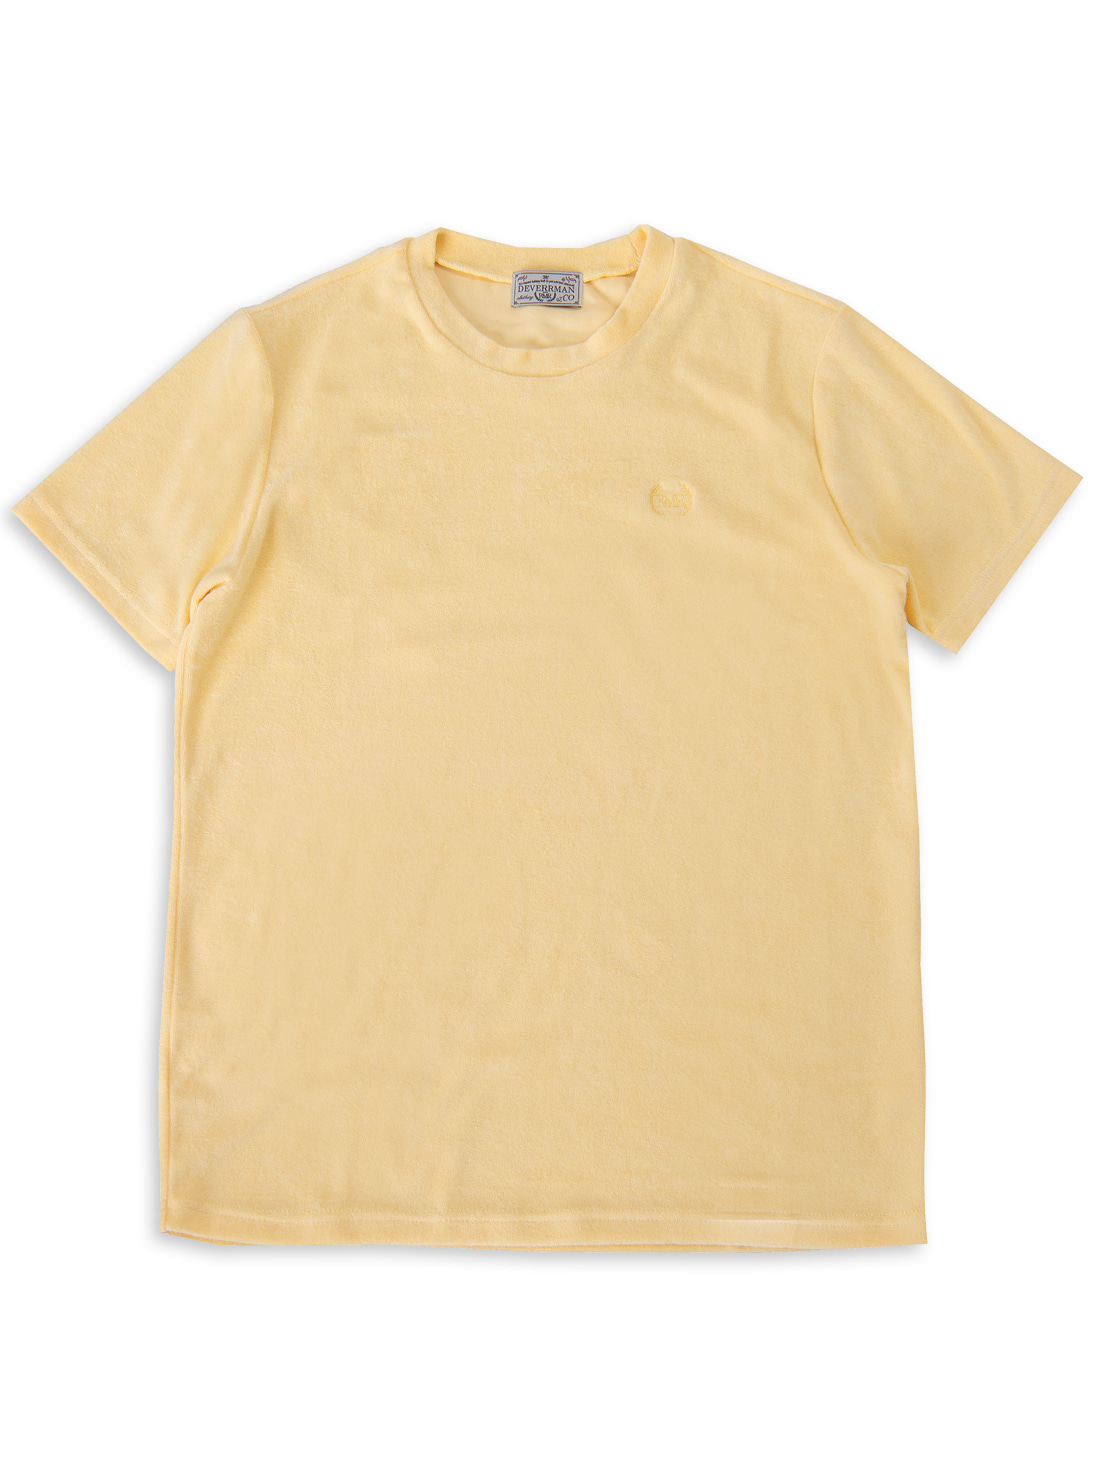 [드베르망] terry cotton emblem T shirt (lemon)